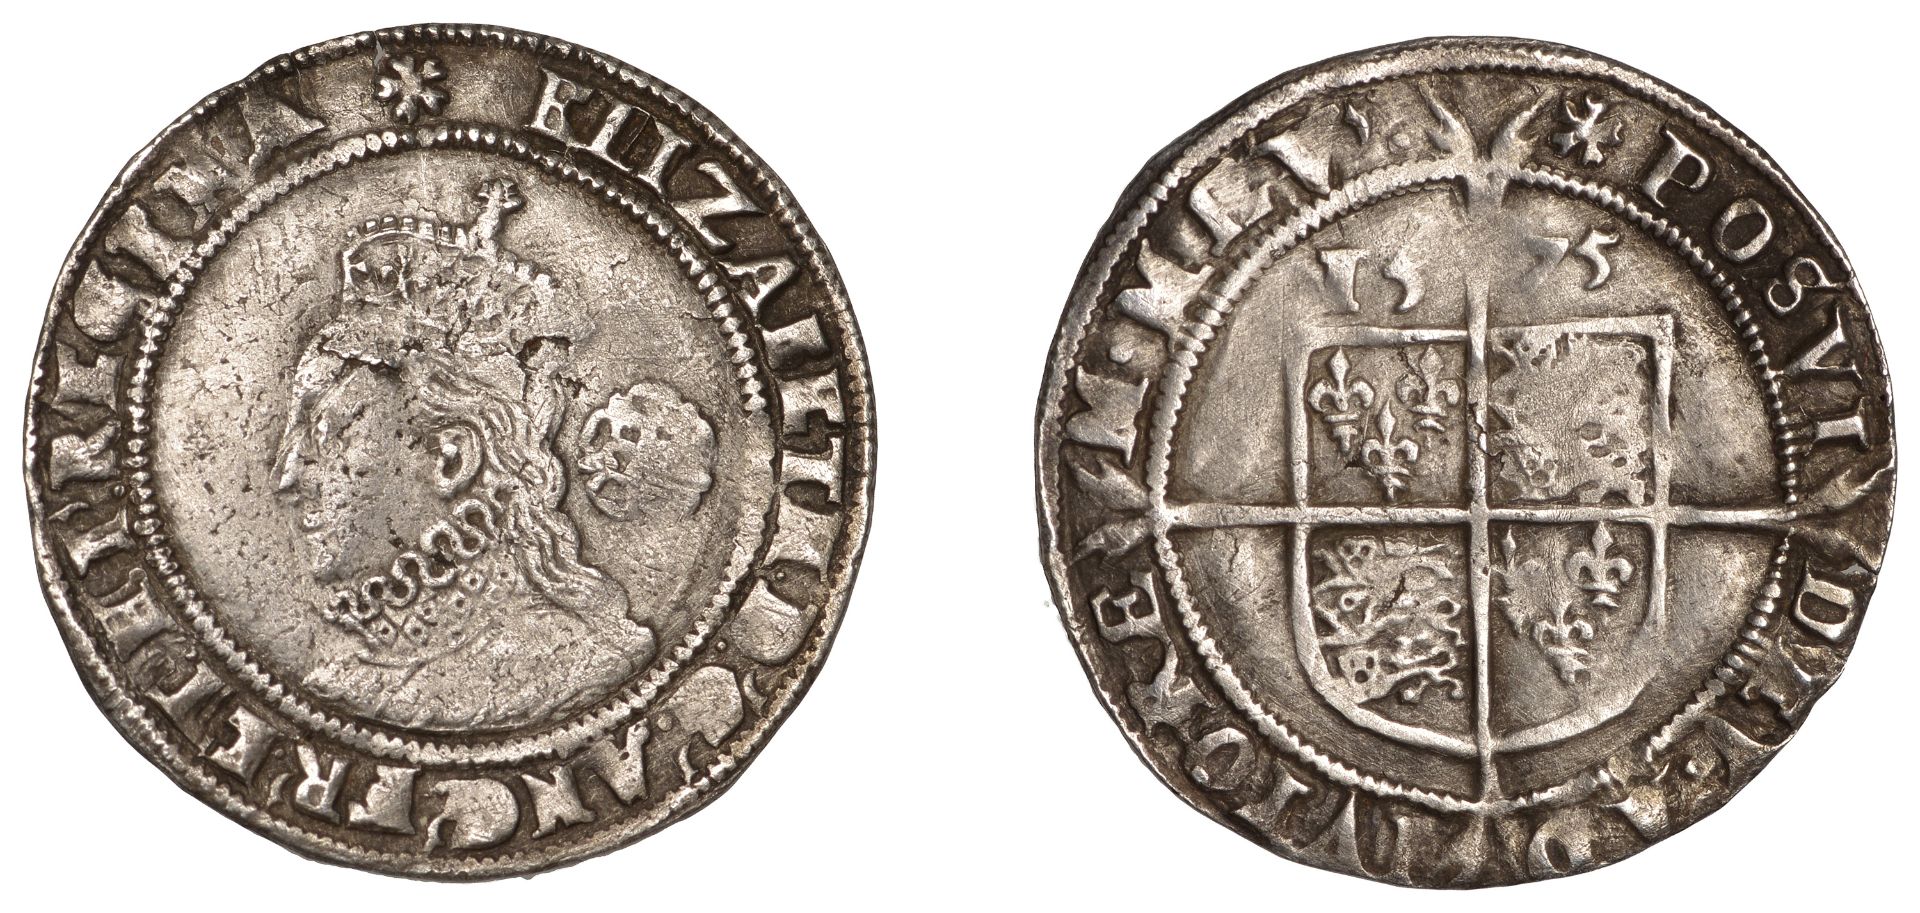 Elizabeth I (1558-1603), Fourth issue, Sixpence, 1575, mm. eglantine, bust 5A, 2.70g/9h (N 1...